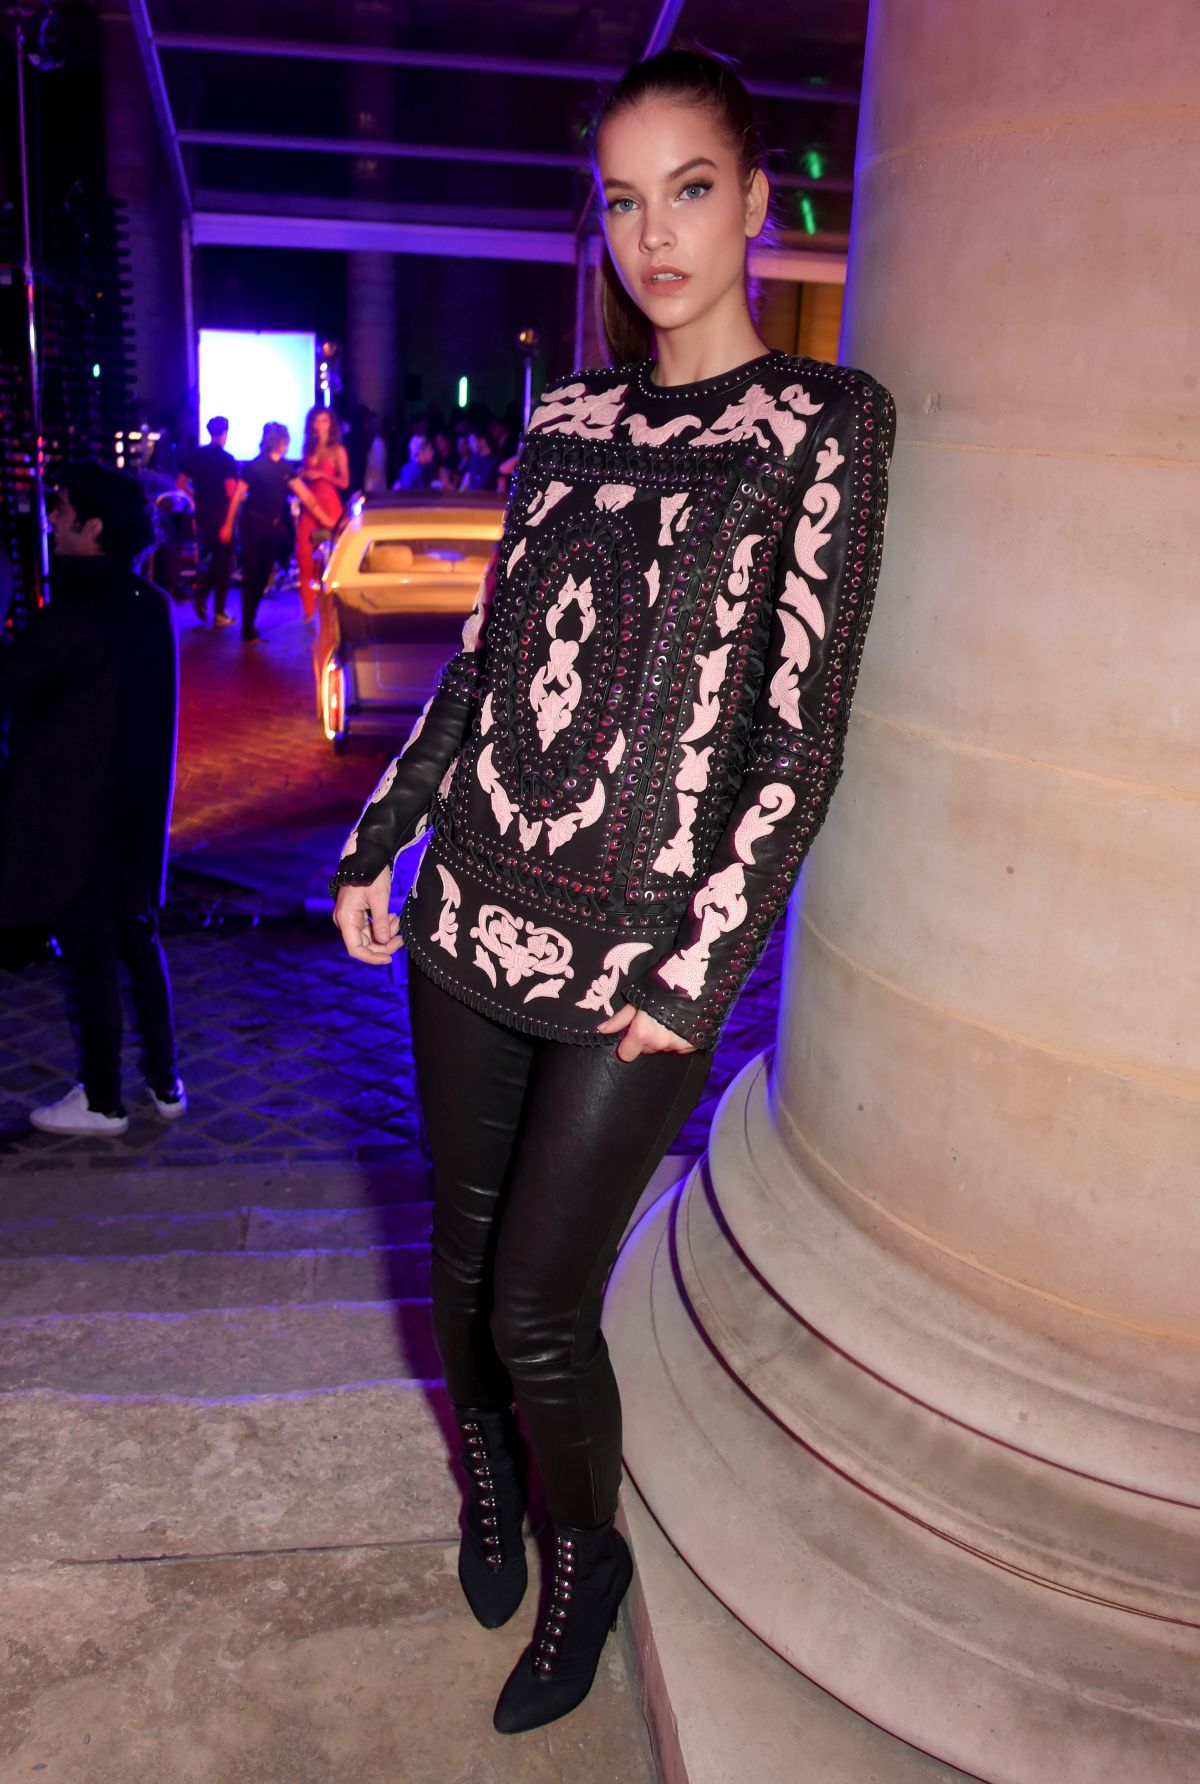 BARBARA PALVIN at L’Oreal Paris x Balmain Show at Paris Fashion Week 09